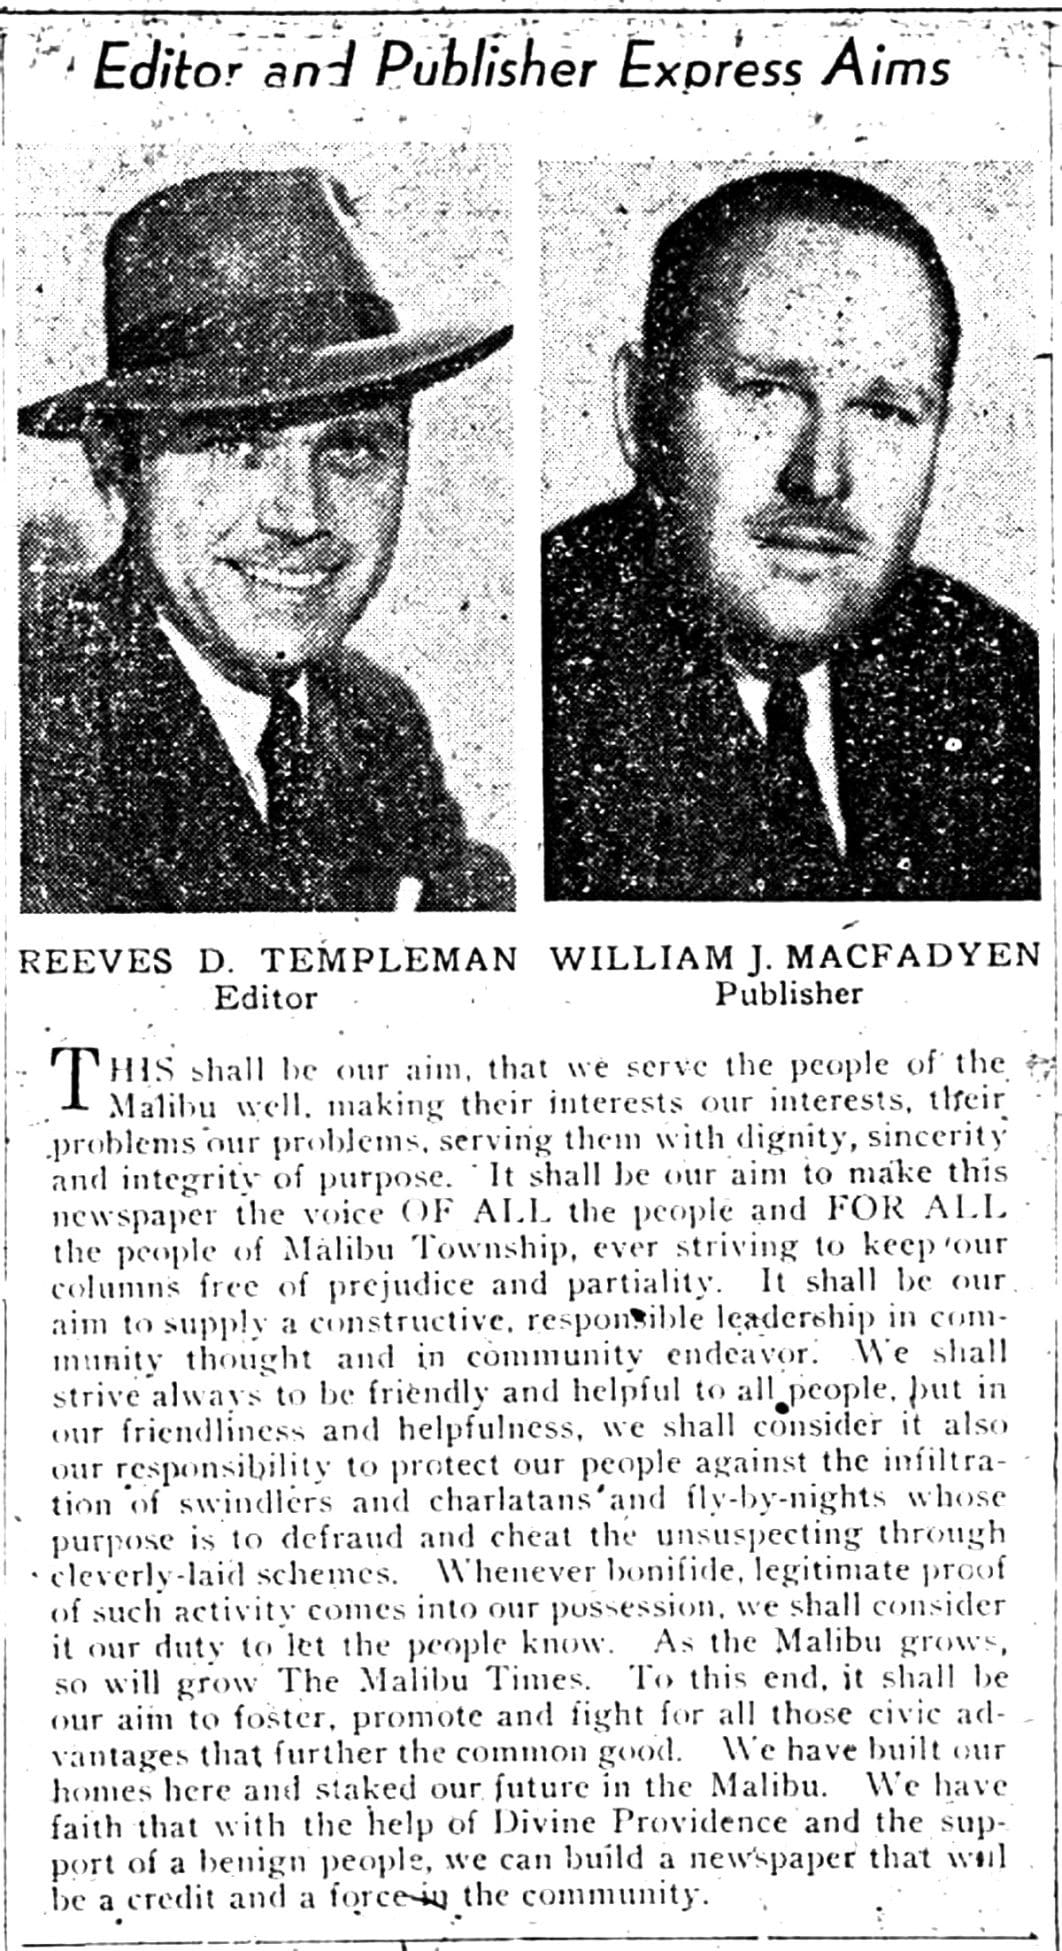 Templeman and McFadyen